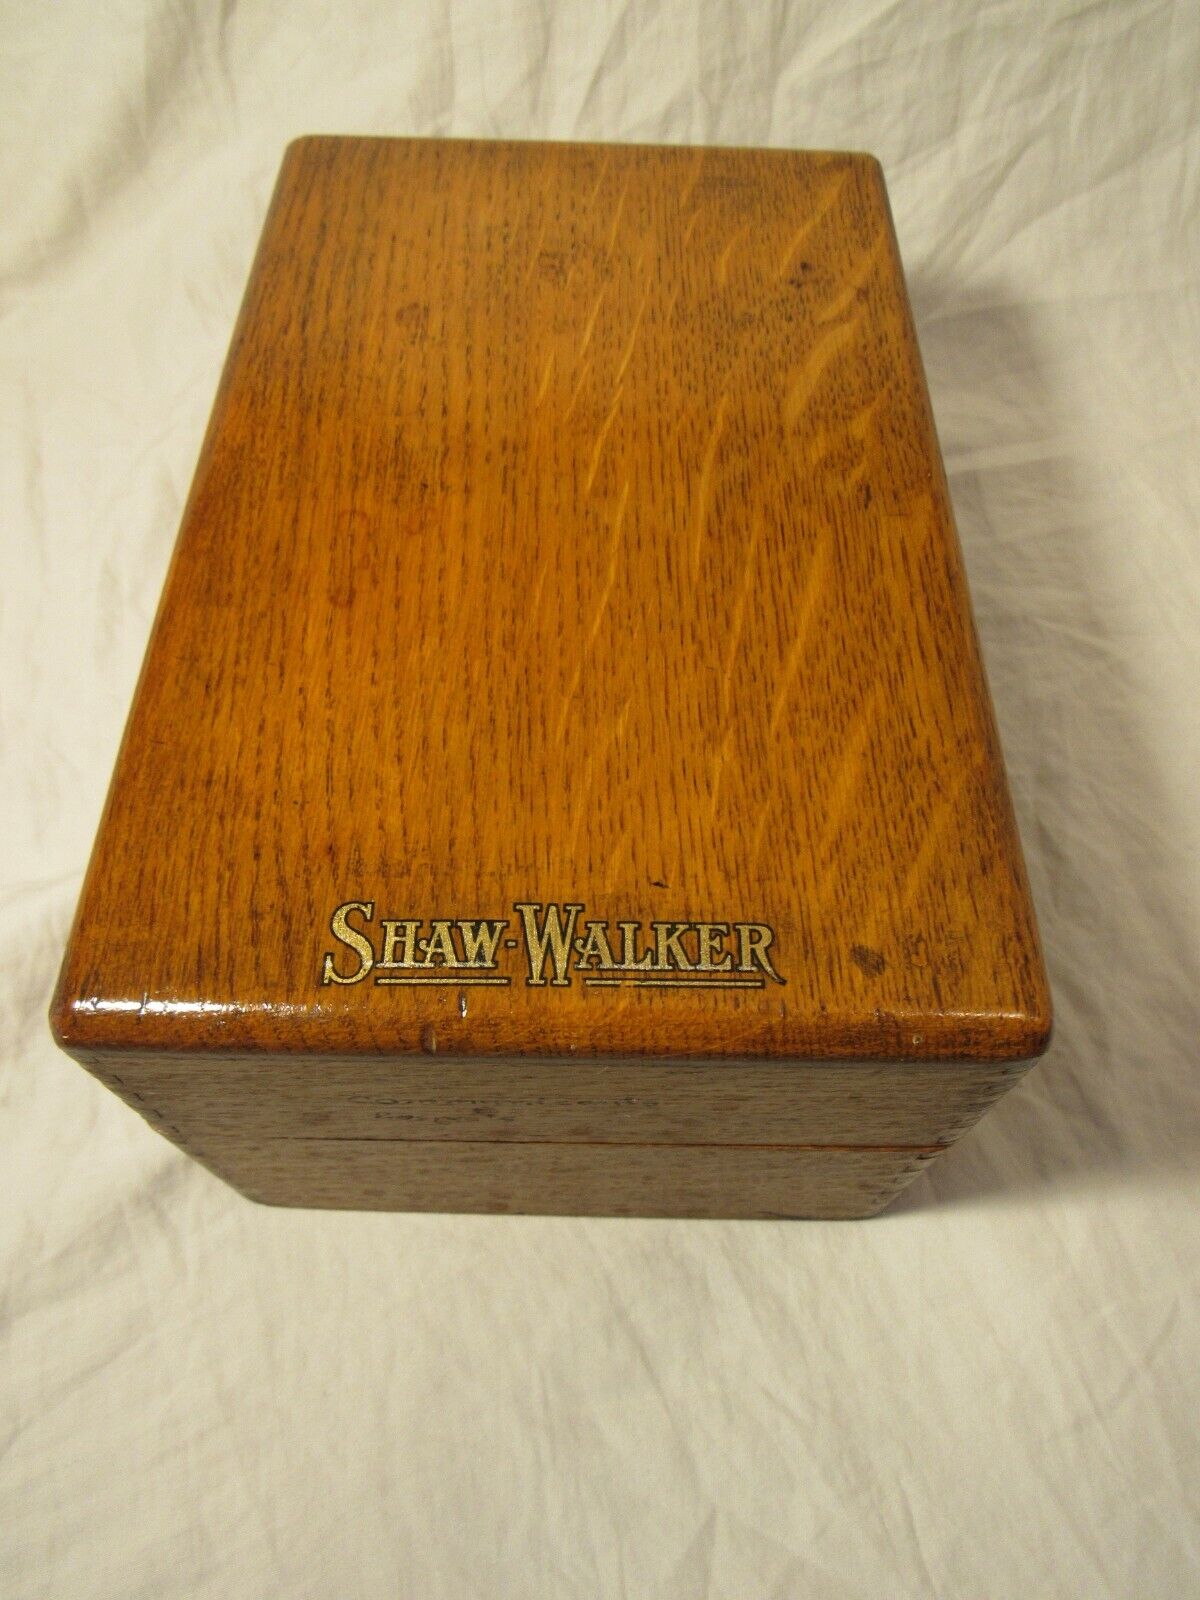 Vintage oak SHAW WALKER index card wooden box holder